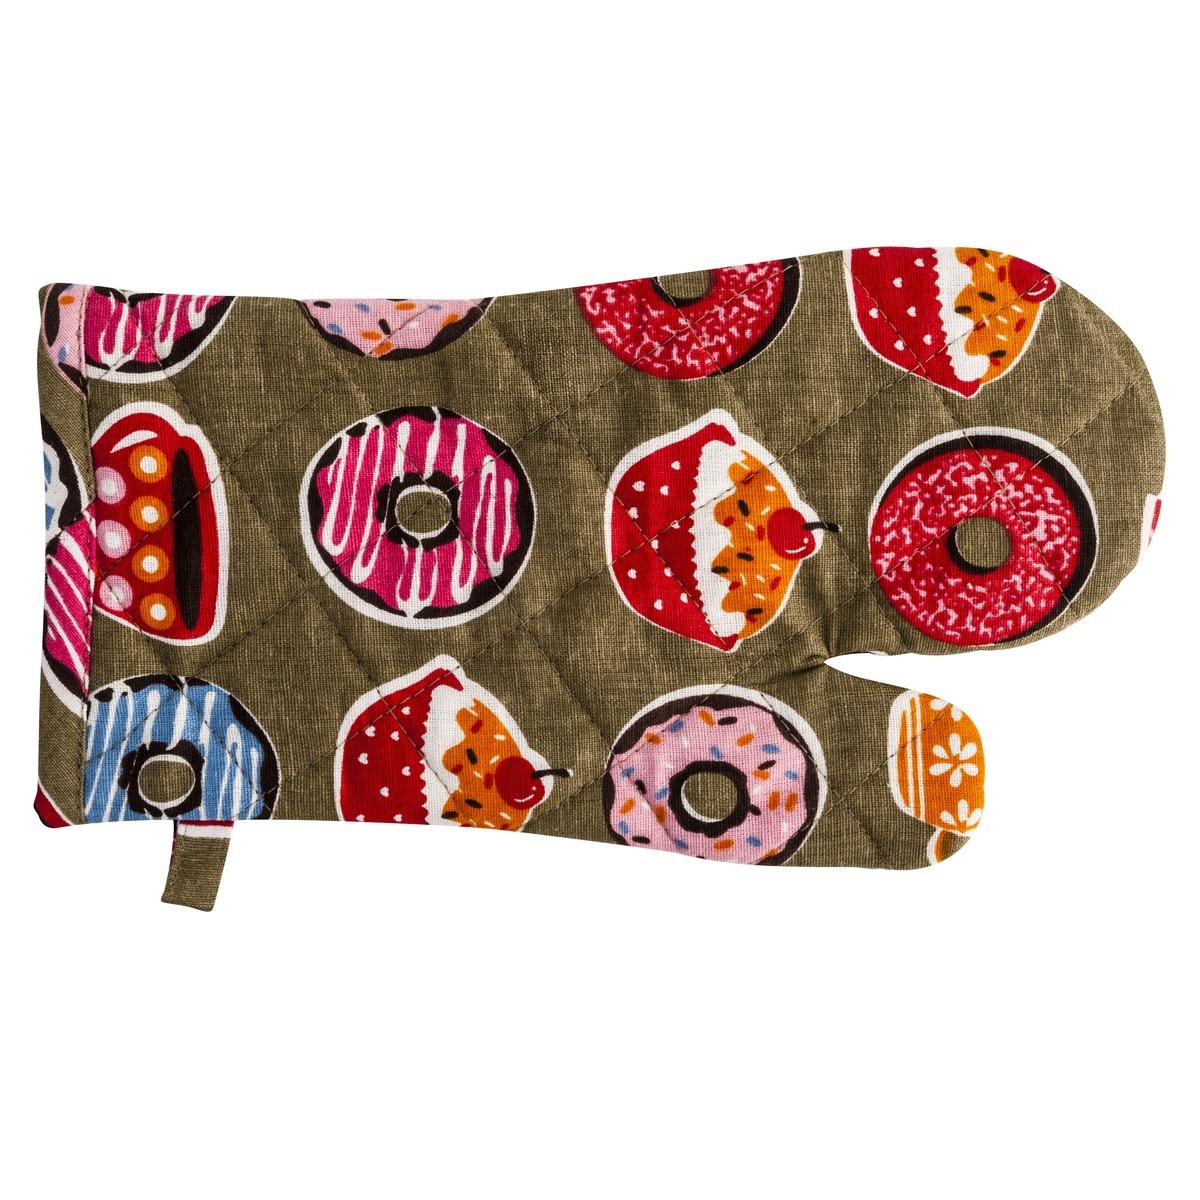 Gant de cuisine coloré collection Cupcake - 100% coton - 16 x 32 cm